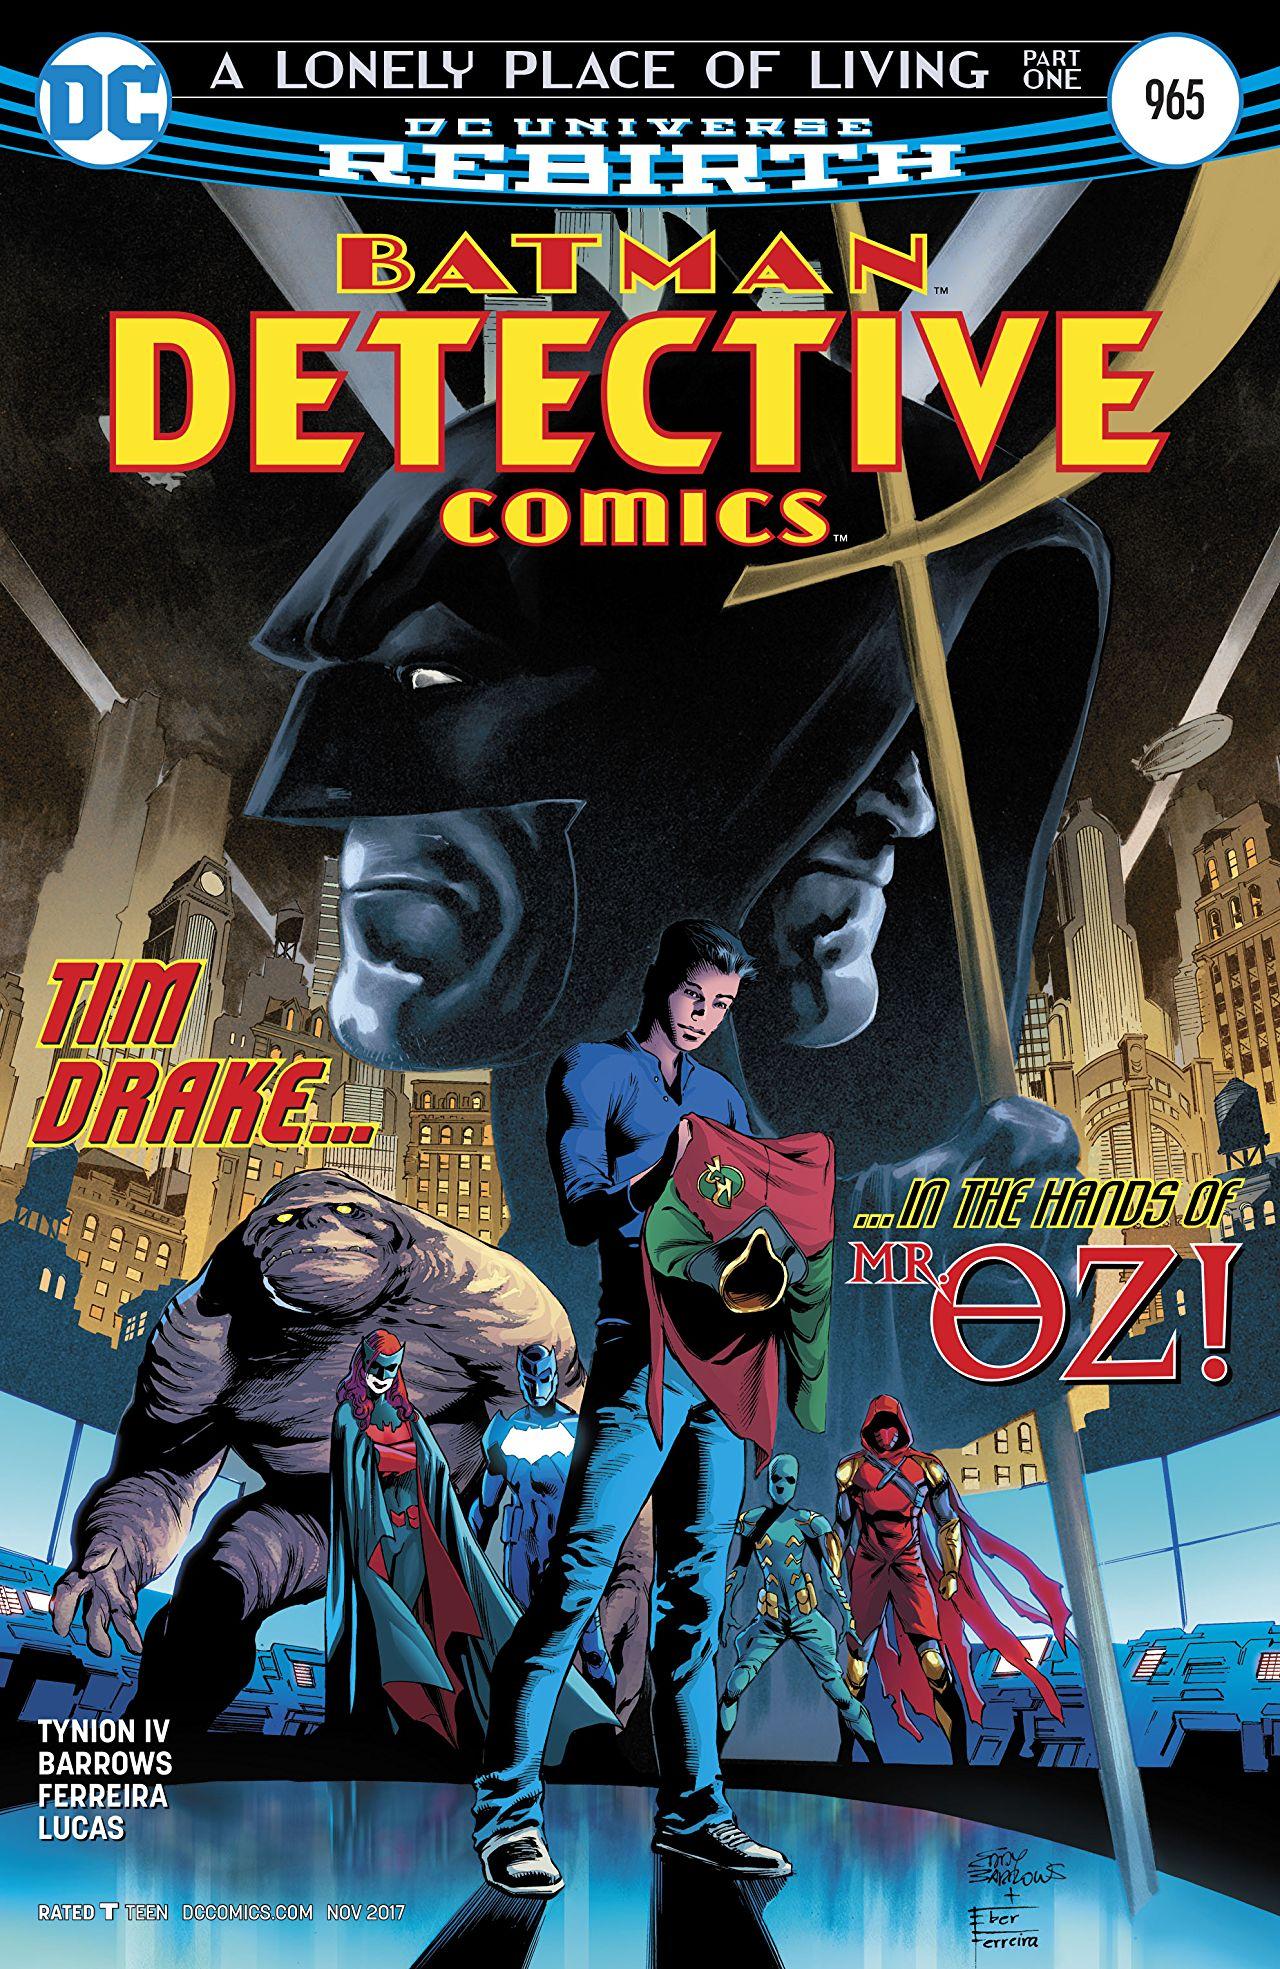 Detective Comics Vol. 1 #965